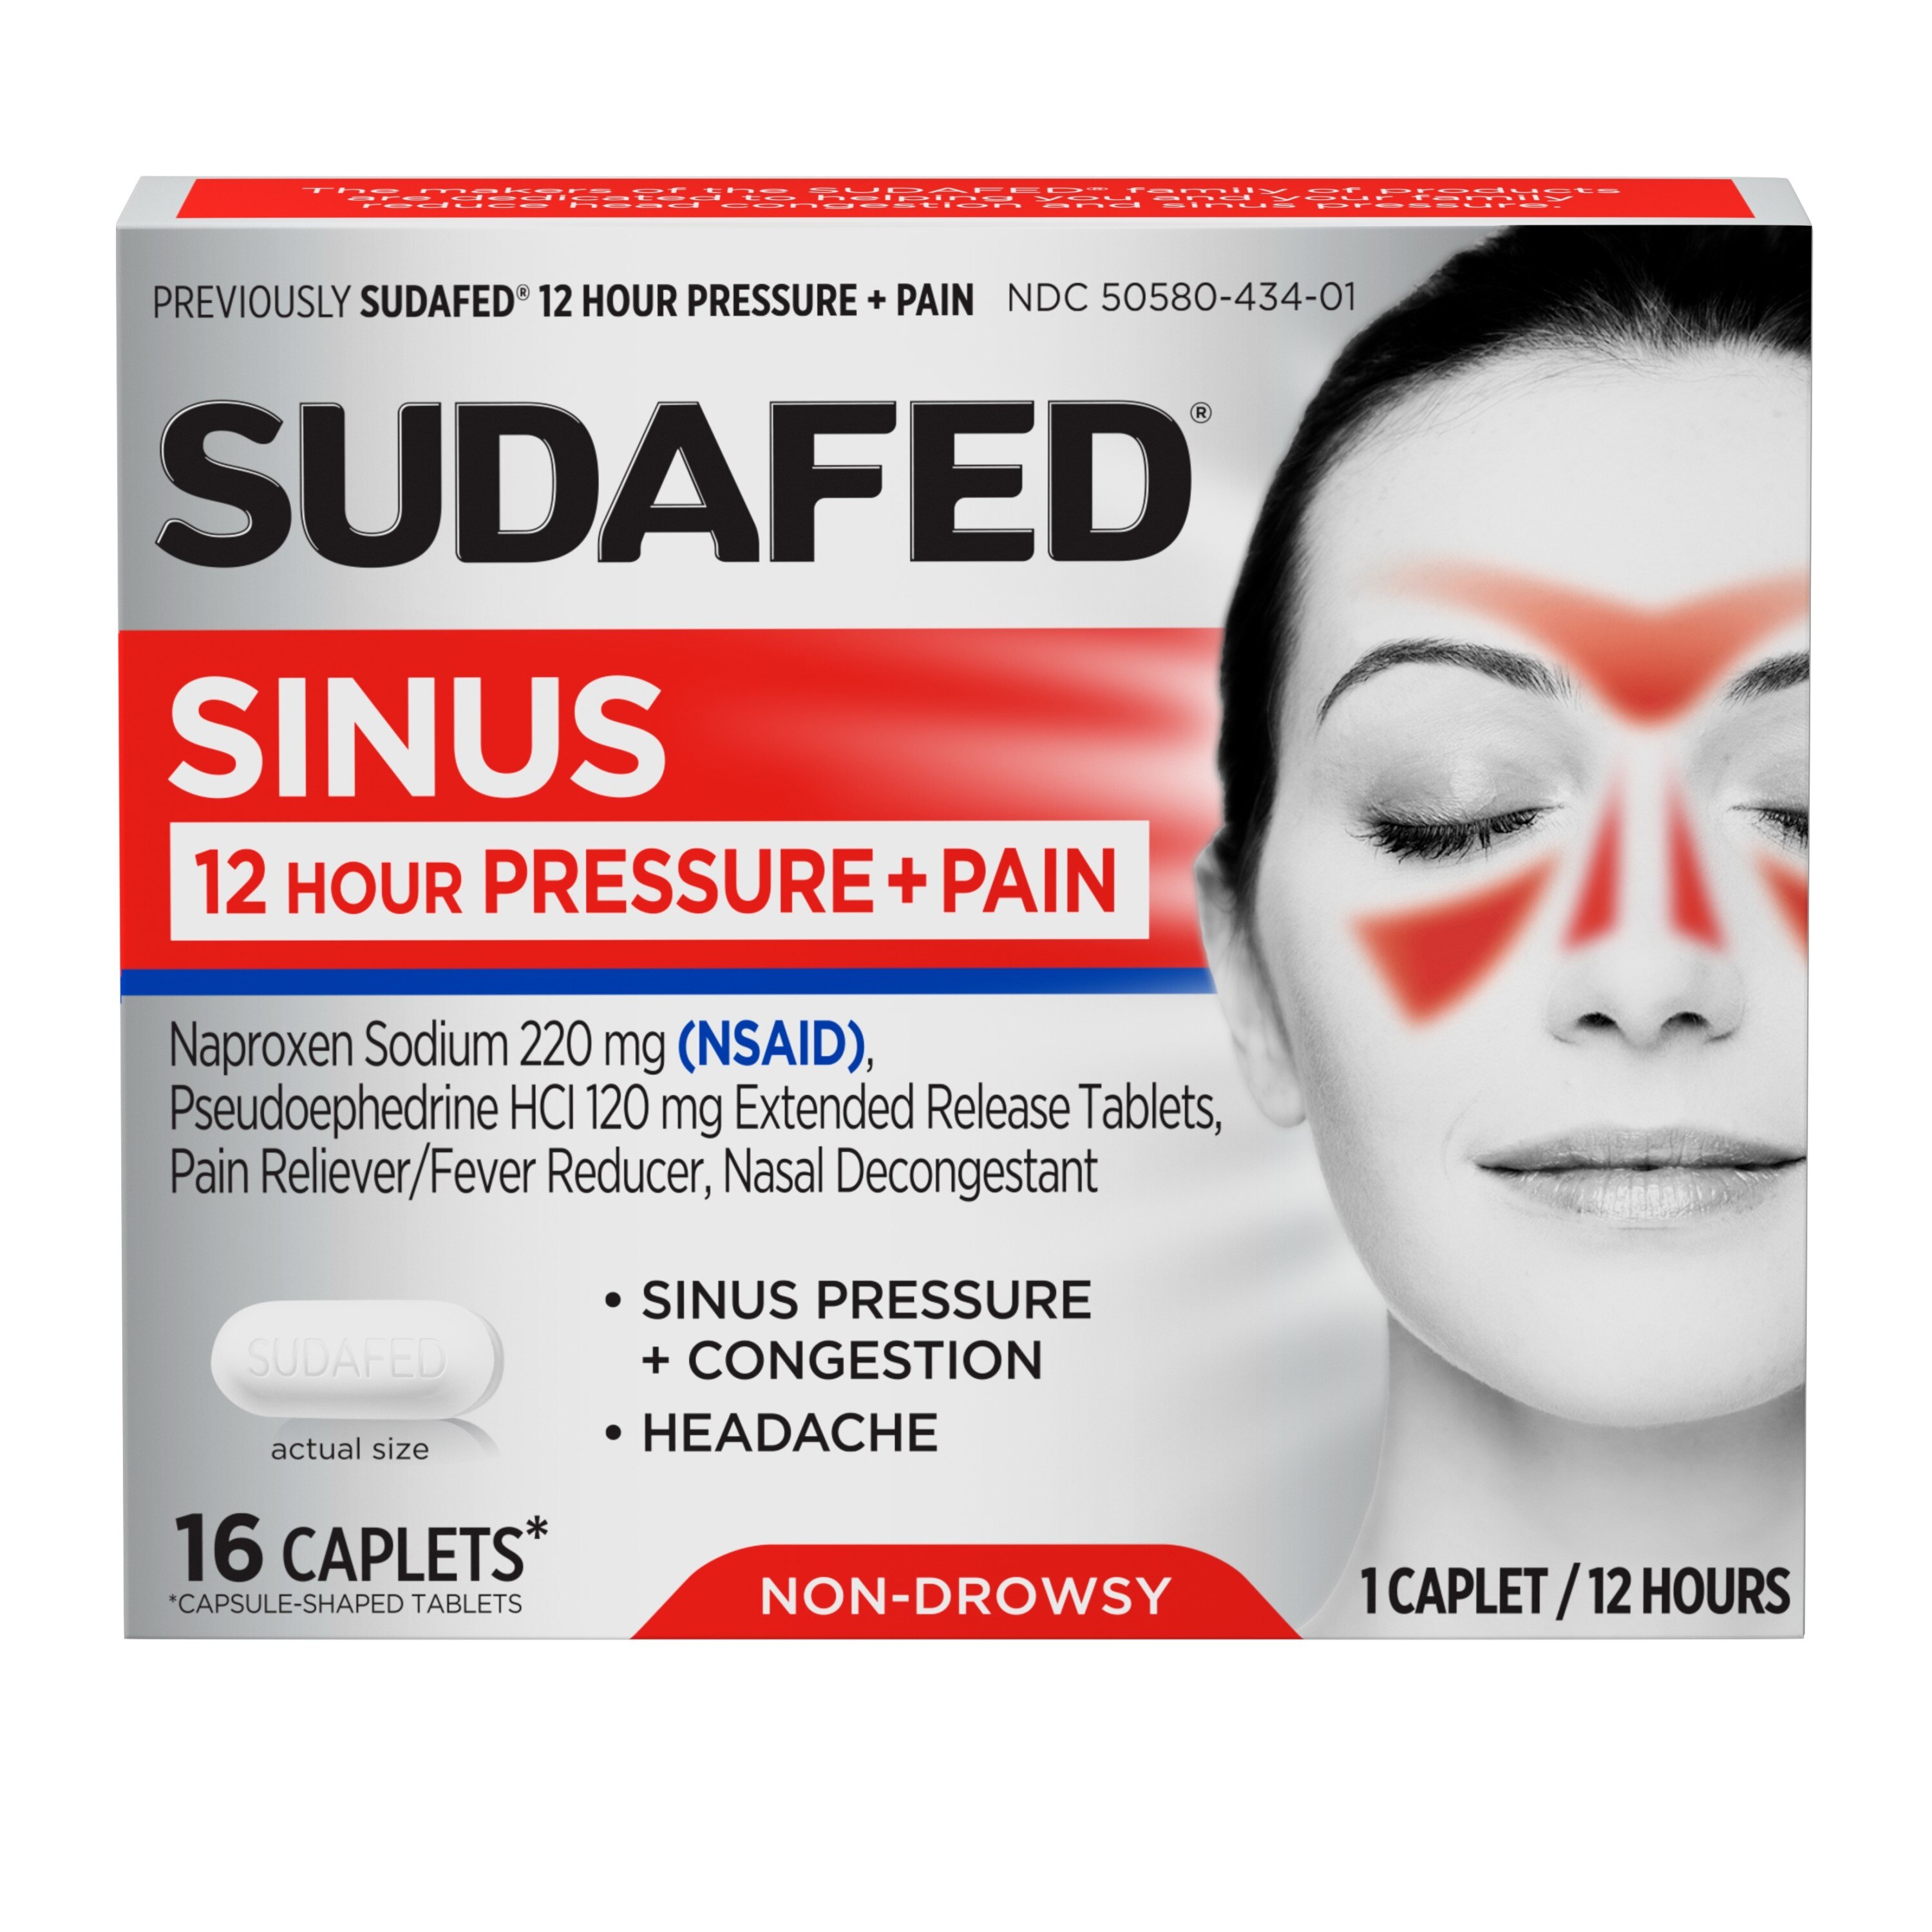 Sudafed 12 Hour Sinus Pressure + Pain Relief Sinus Decongestant, 16 CT